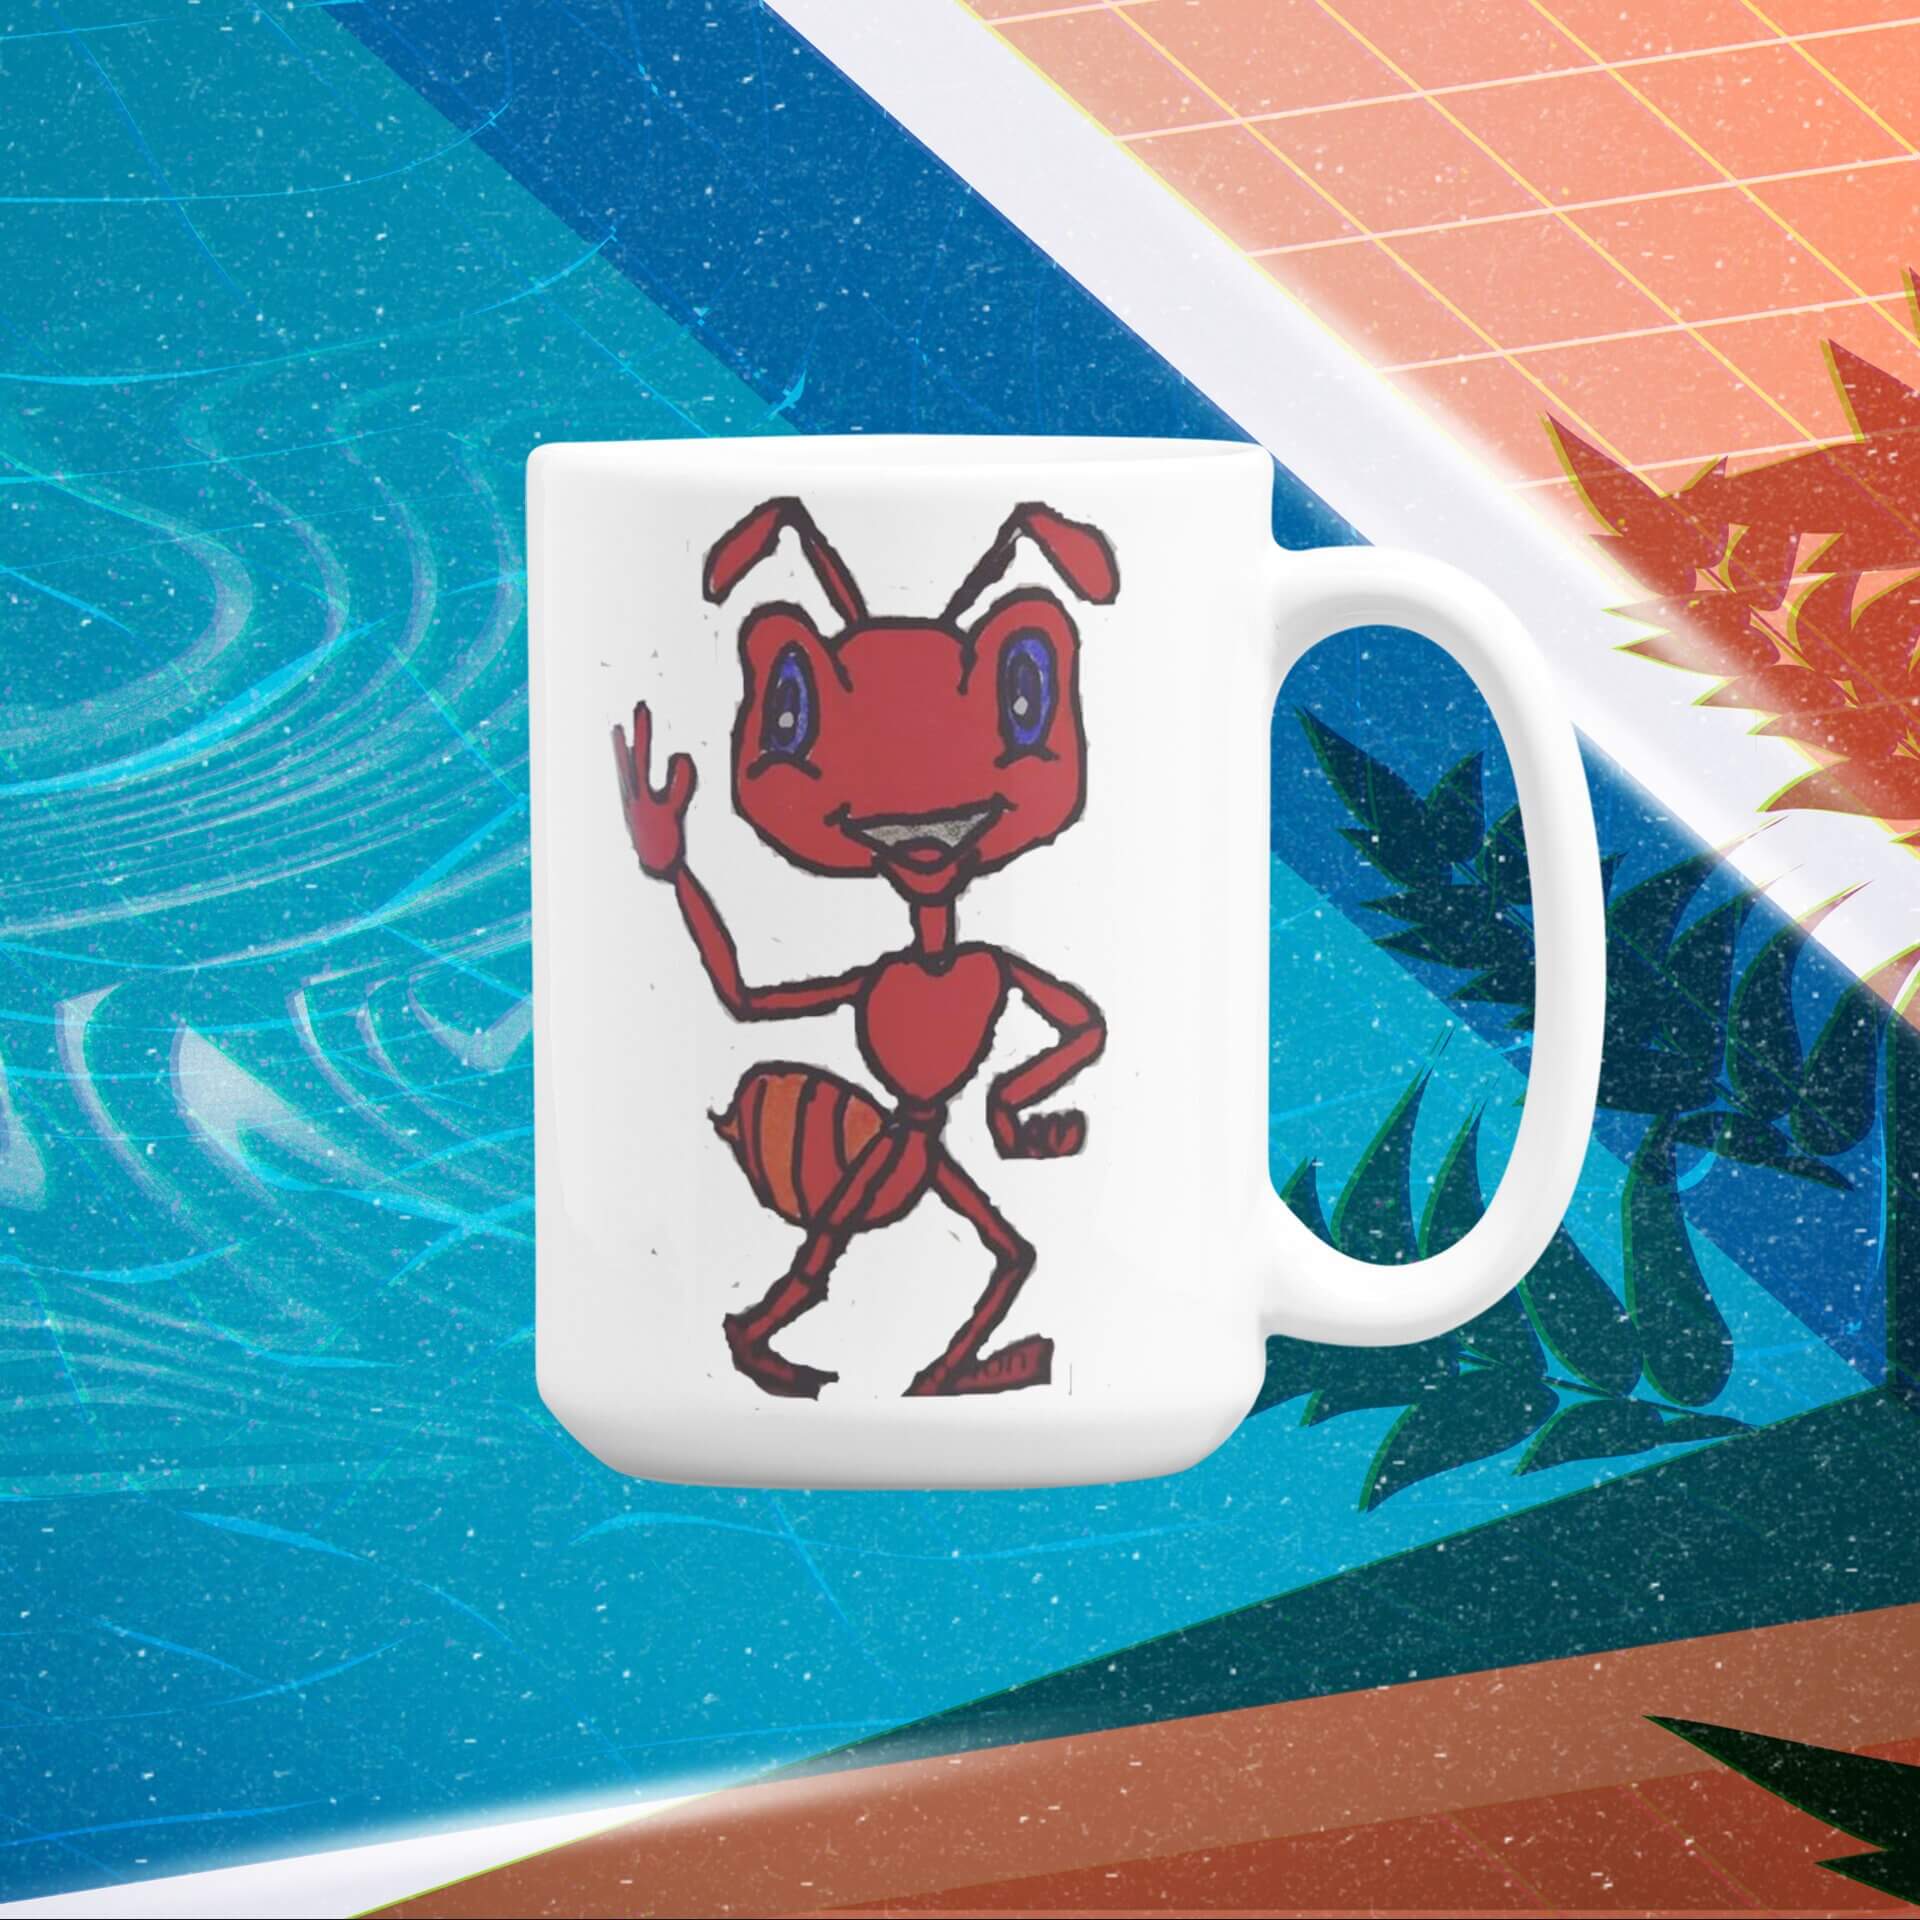 15 oz mug mockup featuring a vaporwave styled illustrated background m1019 2 1